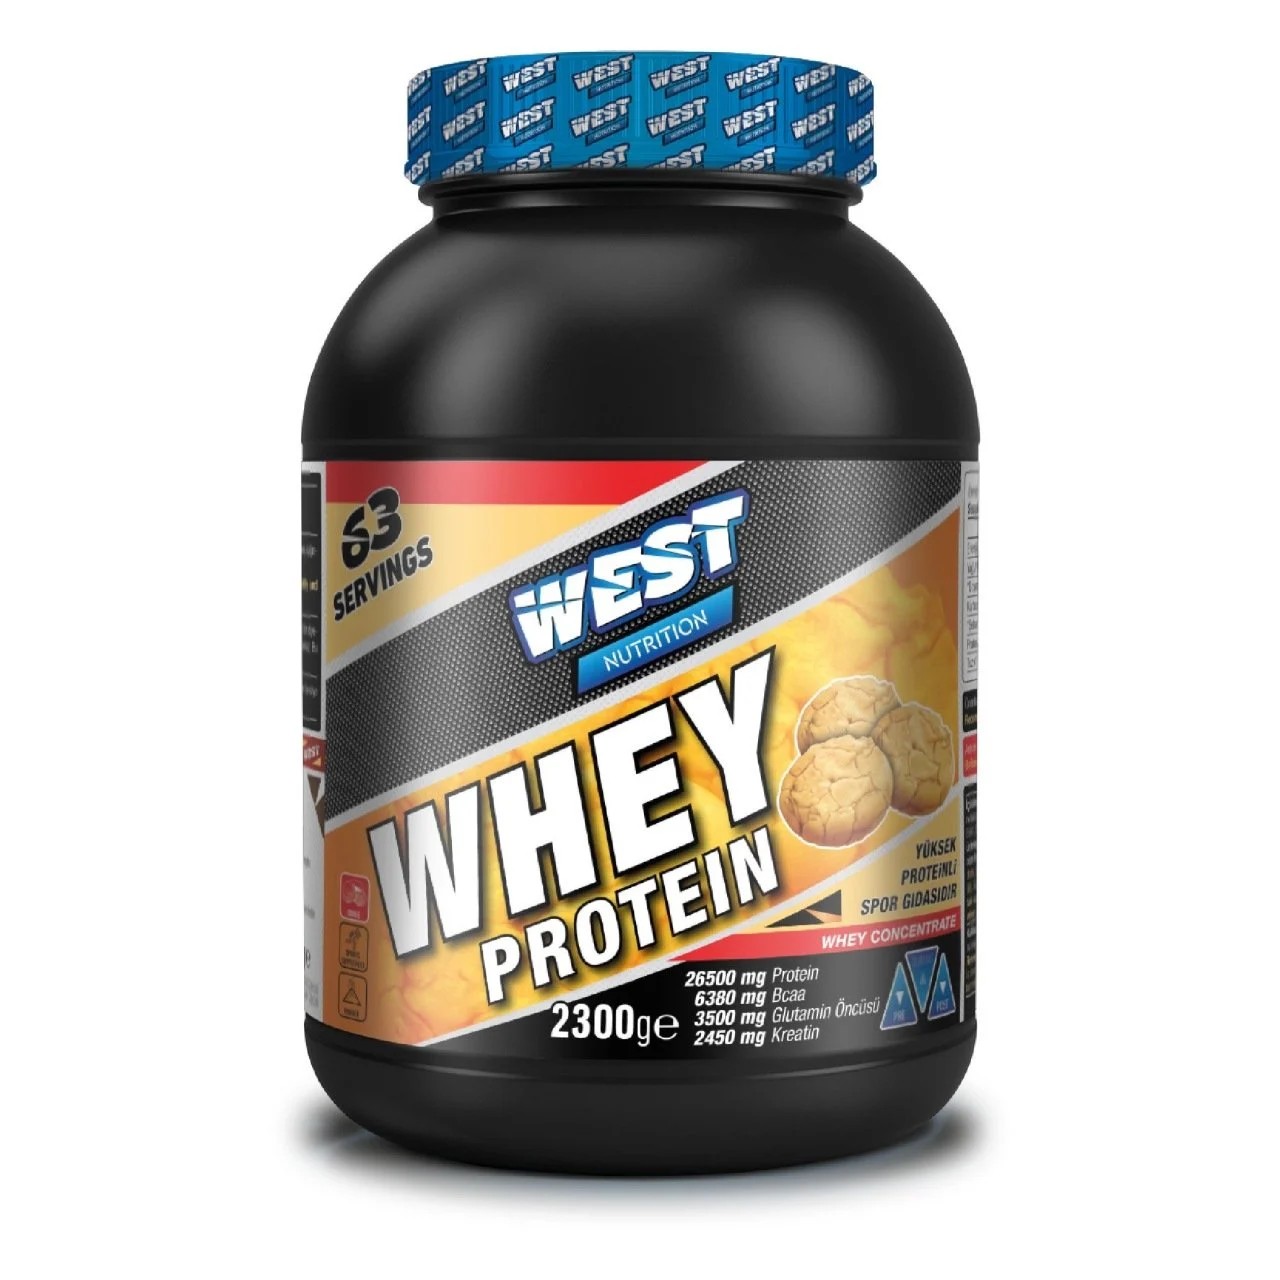 West Nutrition Whey Protein - 2300 GRAM